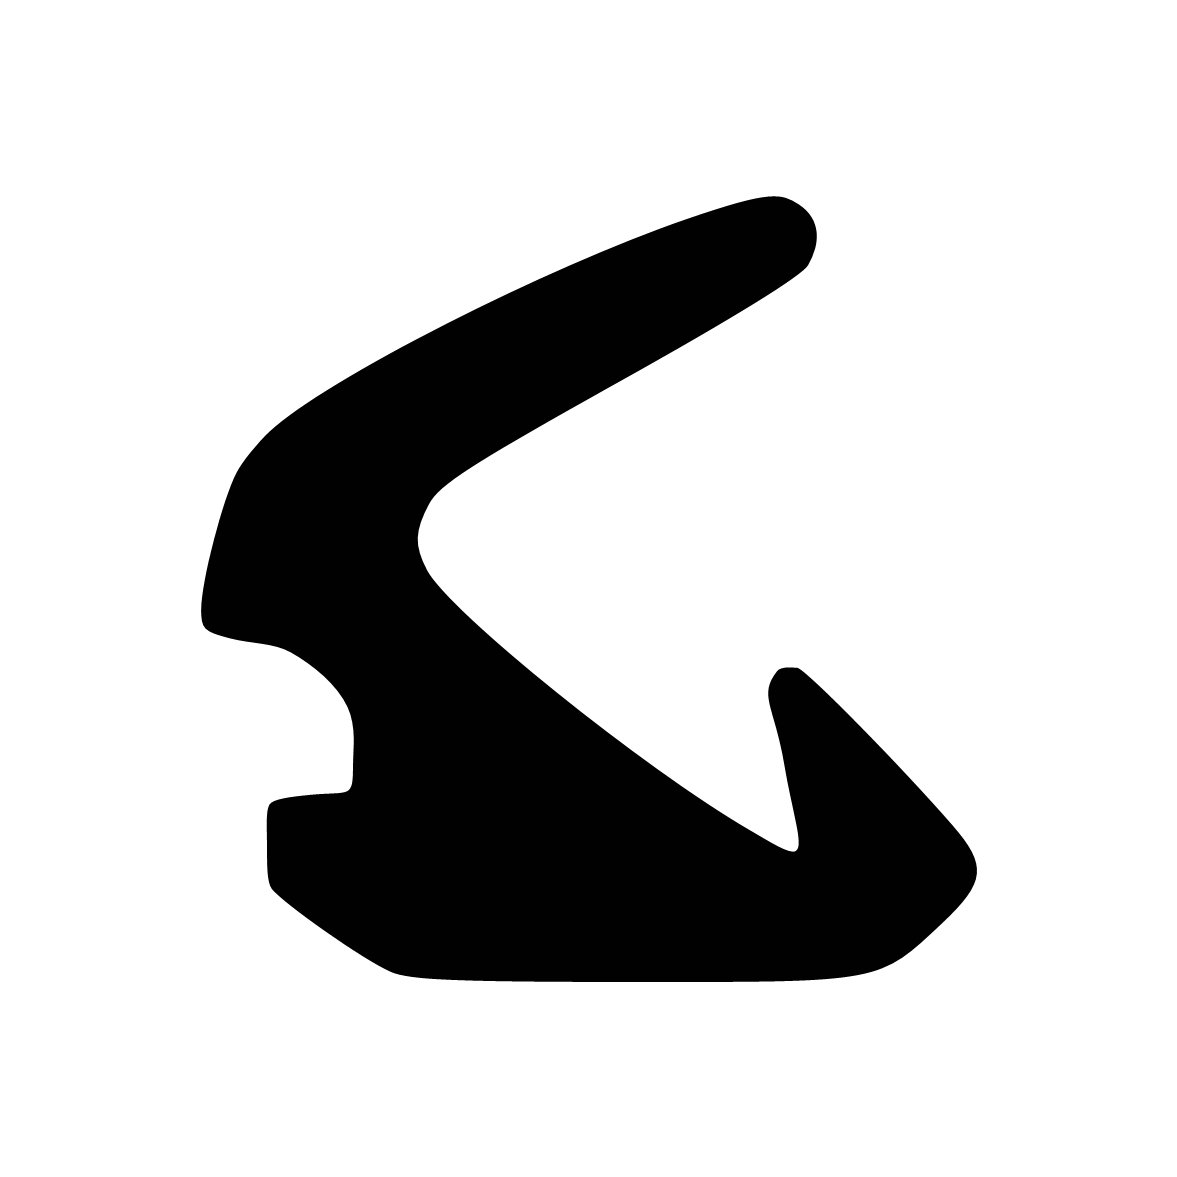 Anschlagdichtung mit Lippe und glattem Fuß | 10 mm Höhe | Farbe: schwarz 